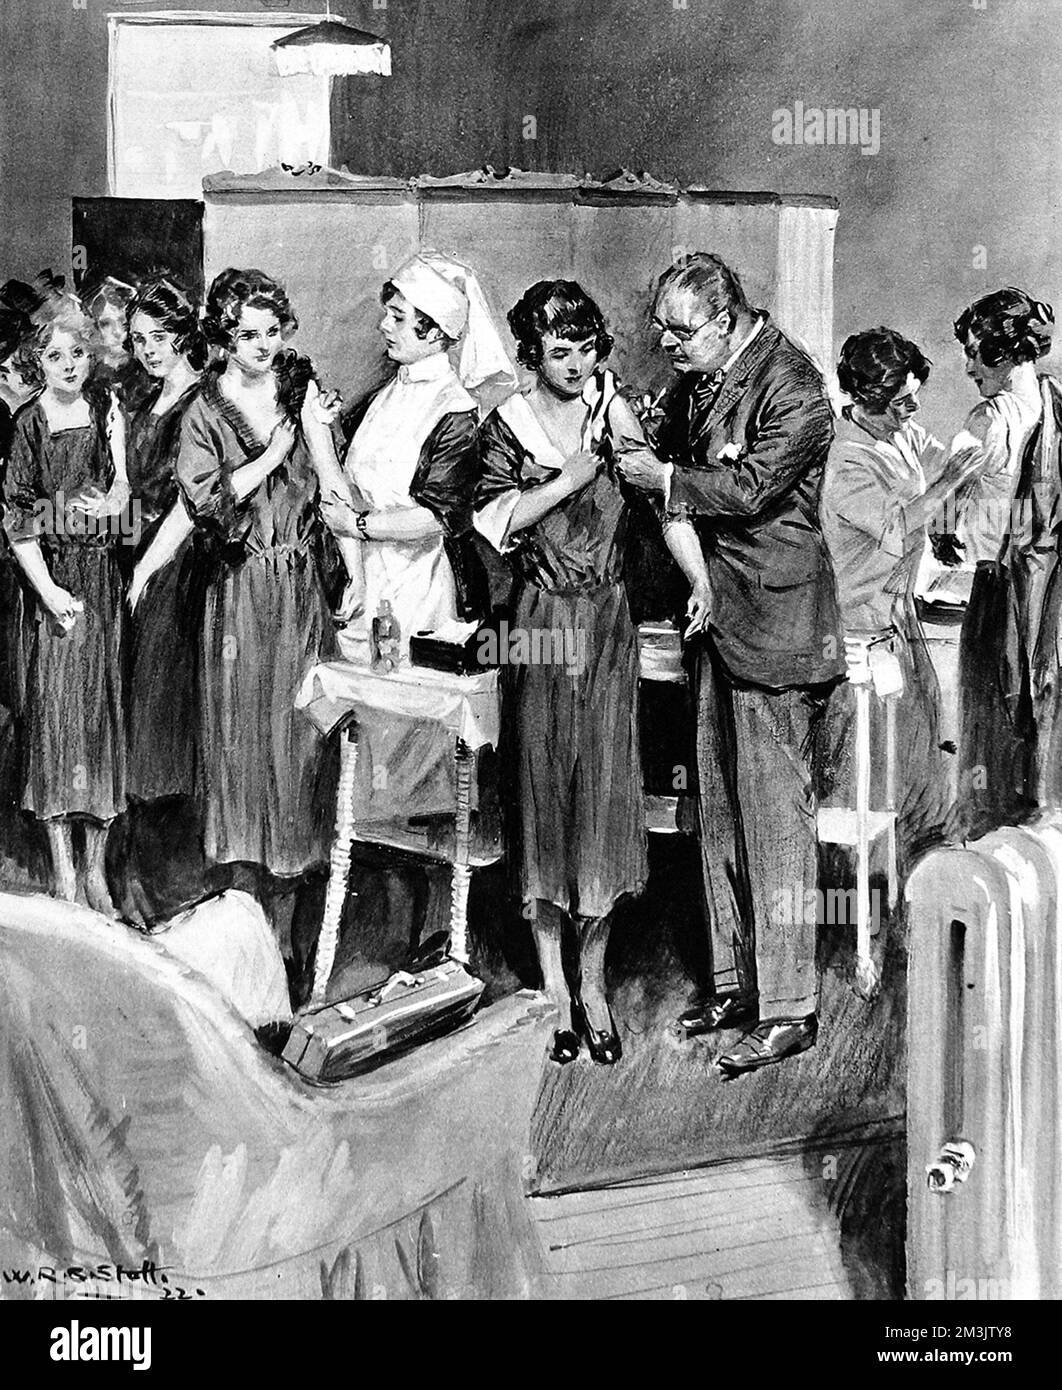 Pockenausbruch im Oktober 1922. Eine Illustration von weiblichen Assistenten bei Harrods, die sich an die Reihe machen, um geimpft zu werden. Datum: 1922 Stockfoto